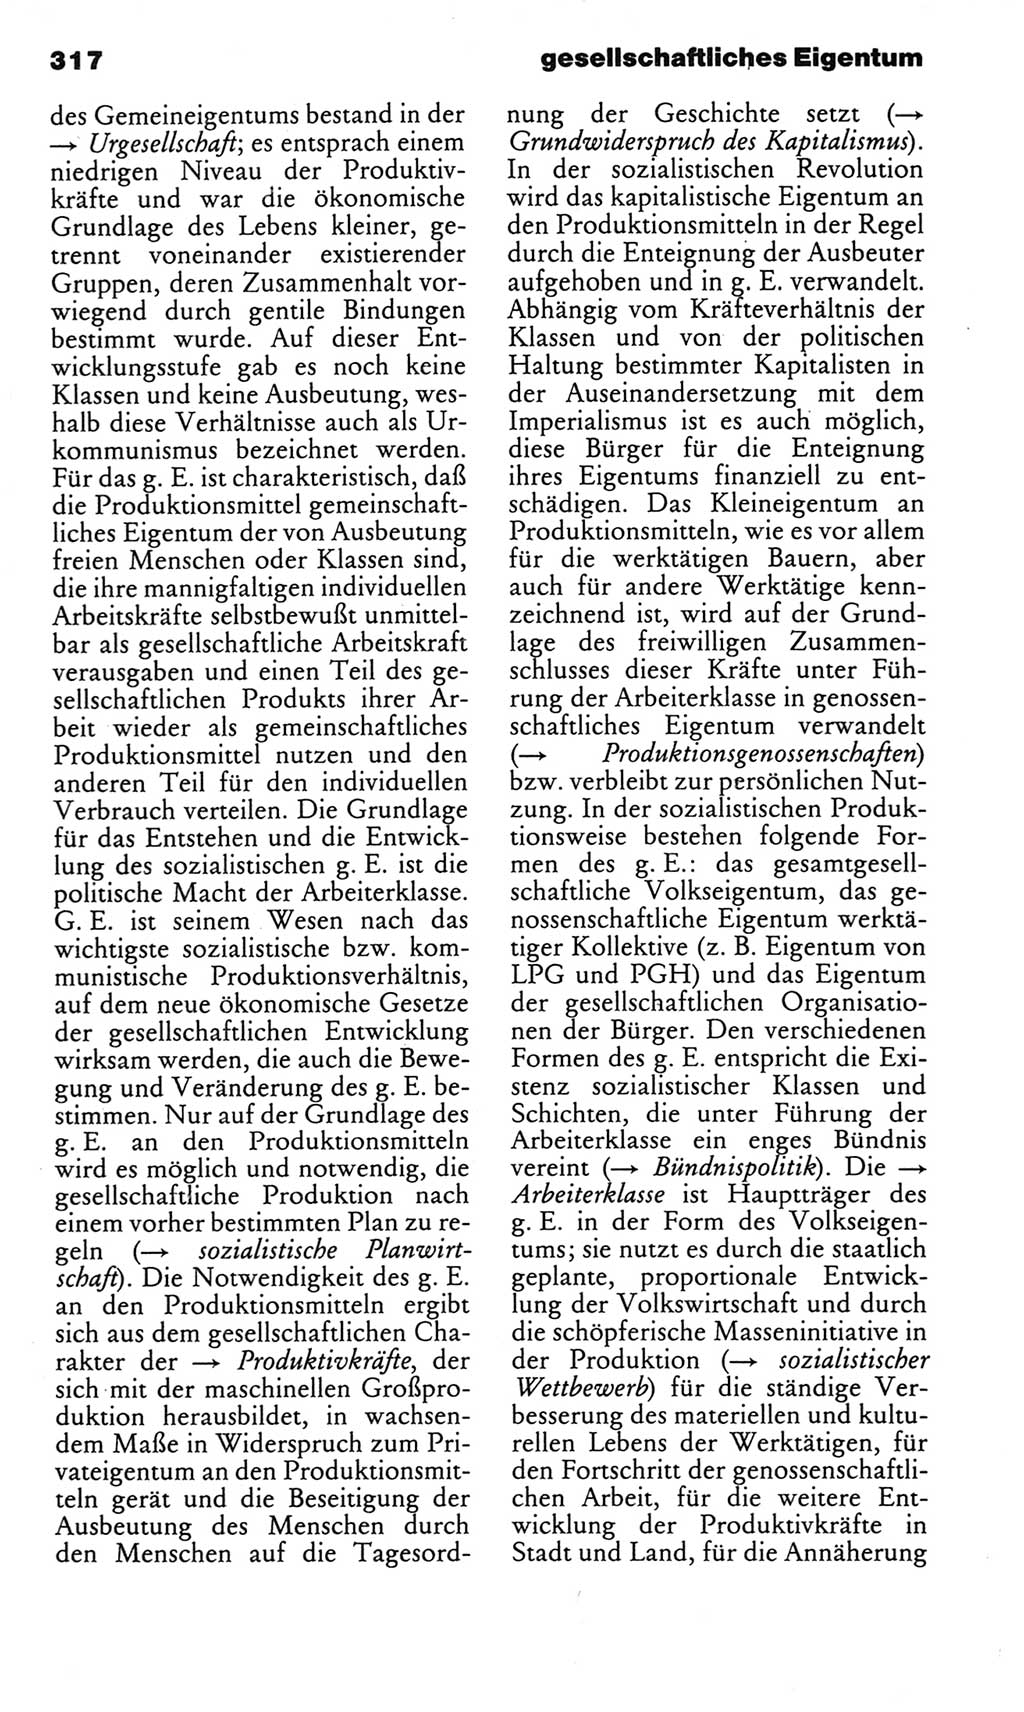 Kleines politisches Wörterbuch [Deutsche Demokratische Republik (DDR)] 1983, Seite 317 (Kl. pol. Wb. DDR 1983, S. 317)